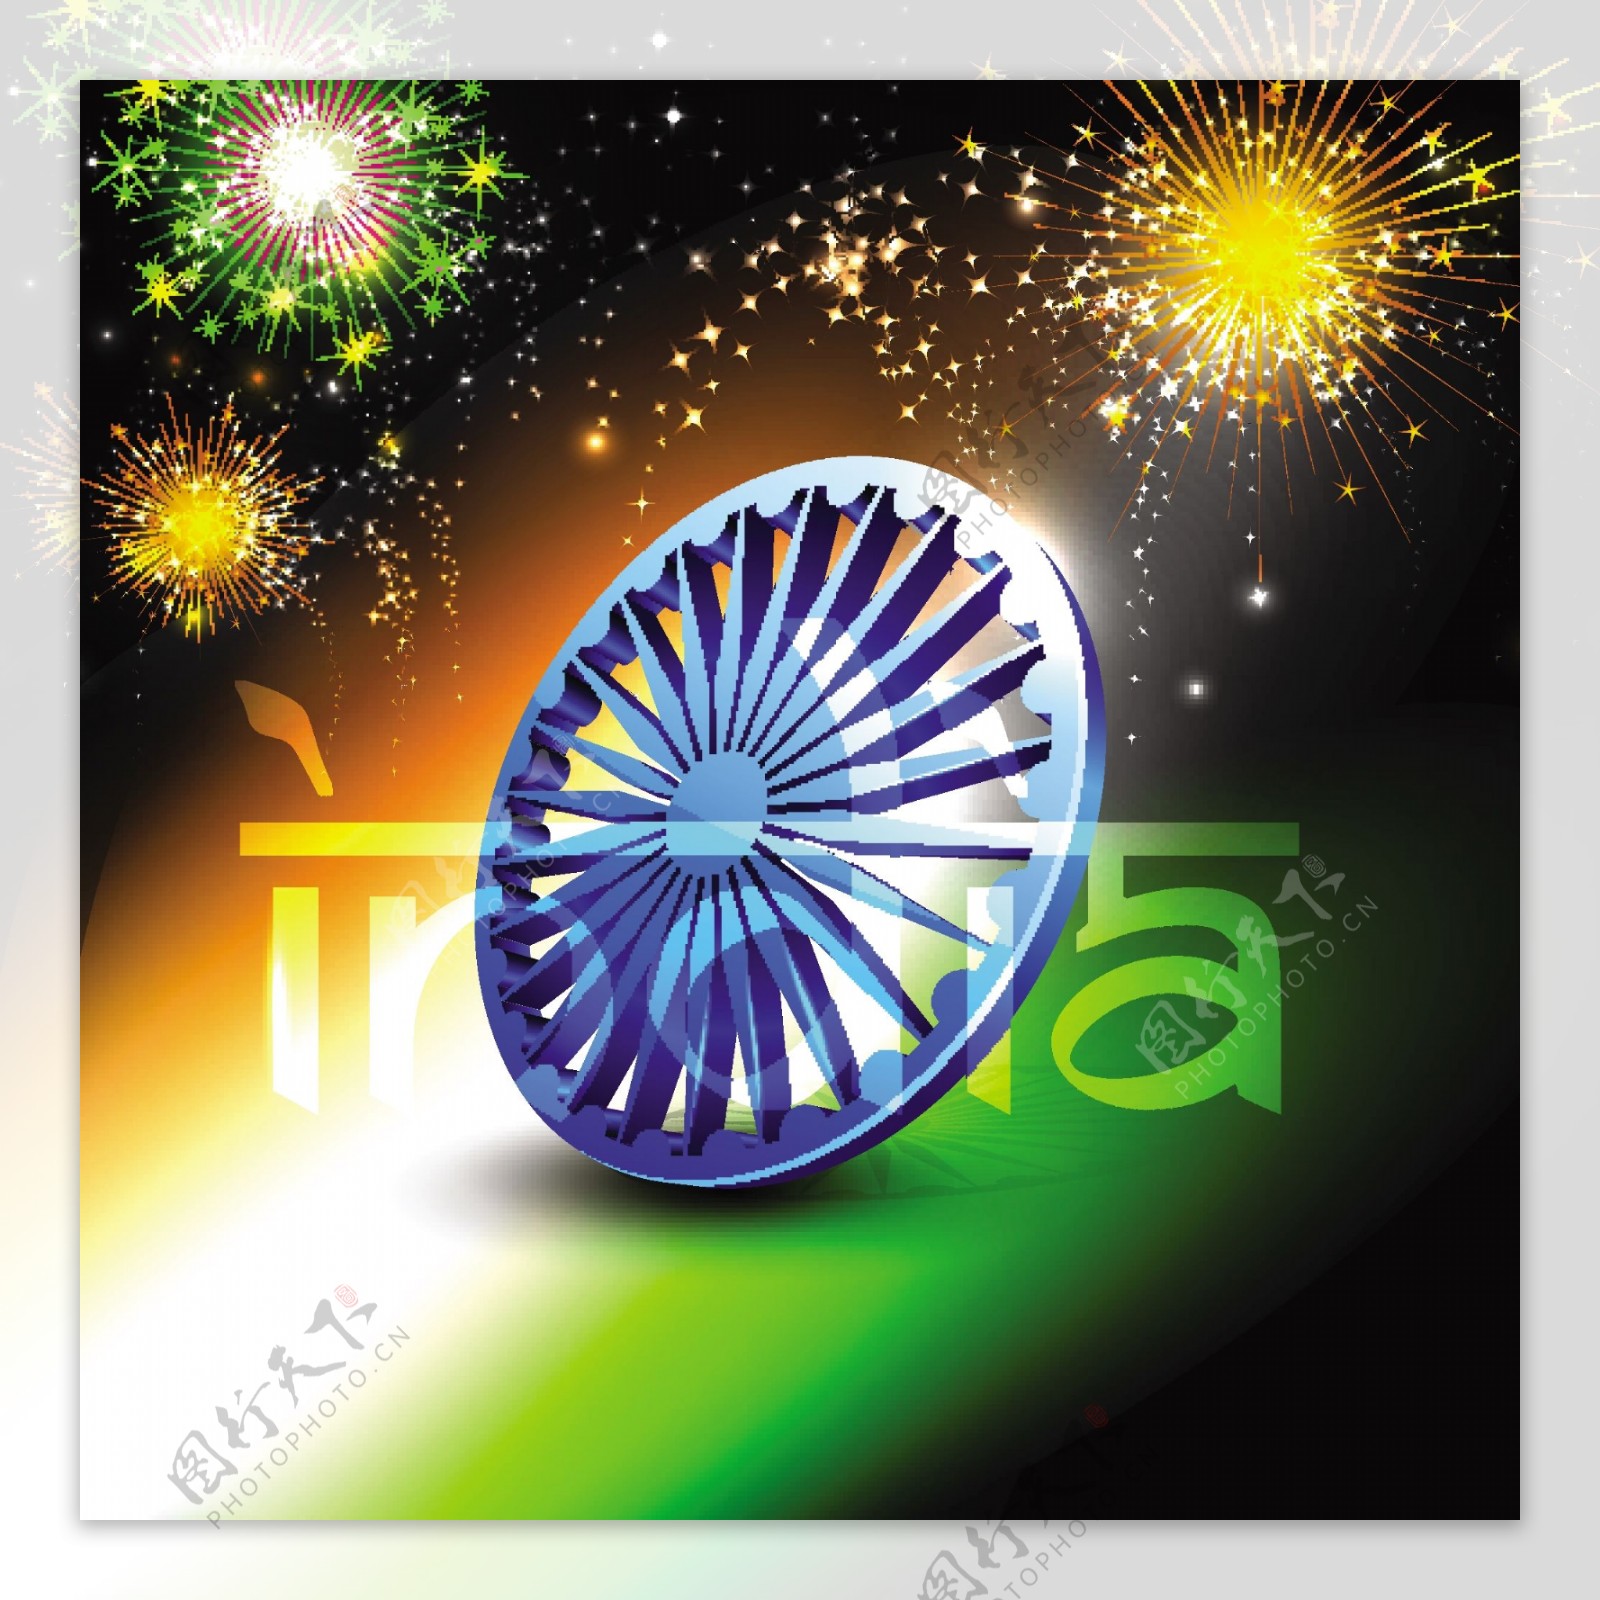 印度国旗颜色的背景与3D阿育王轮